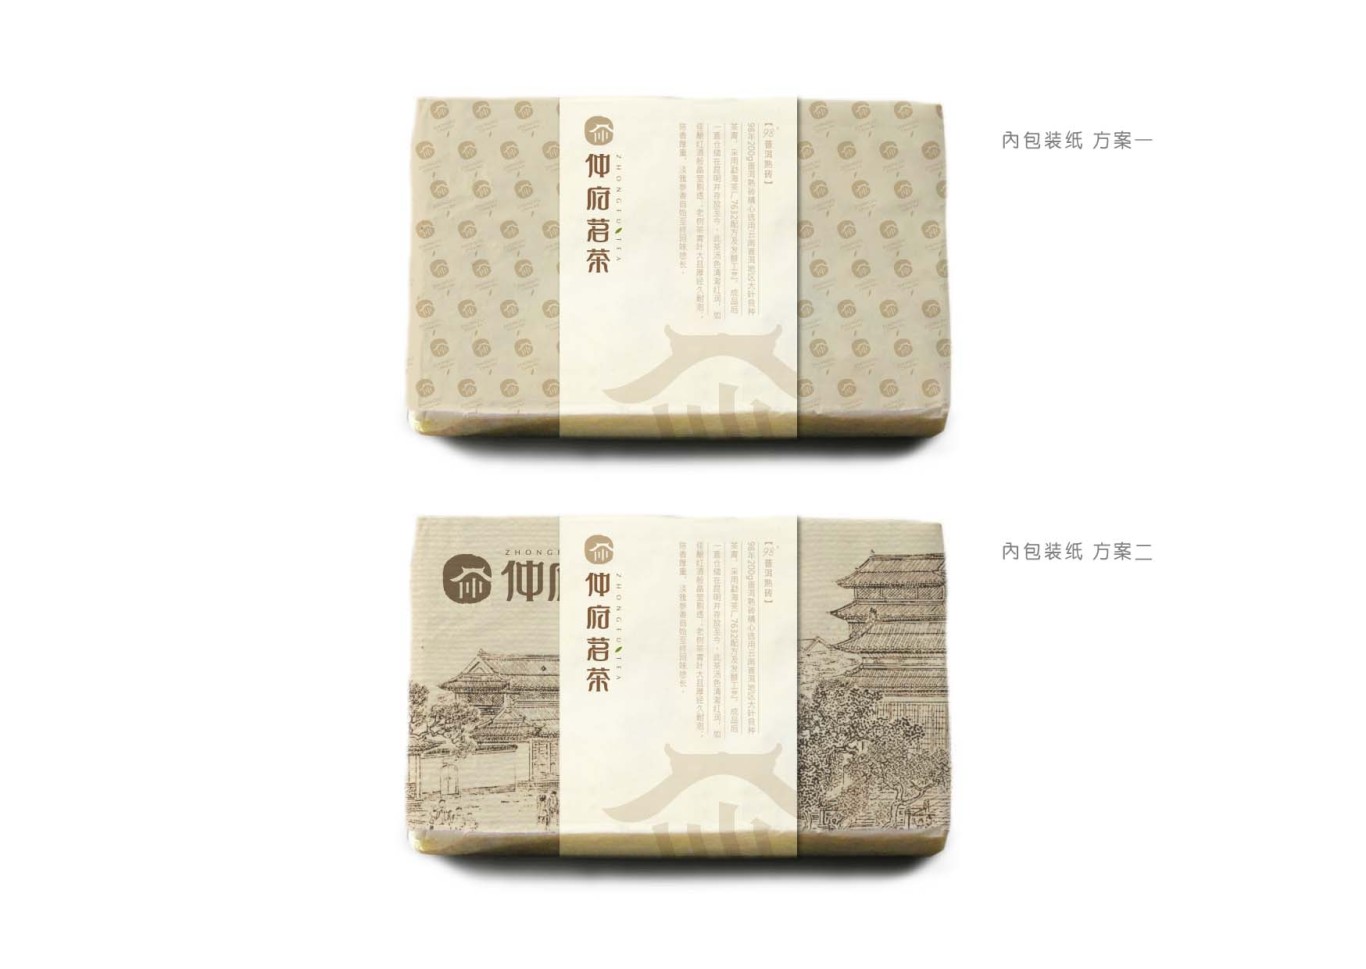 仲府茗茶 高端茶业品牌形象设计图29